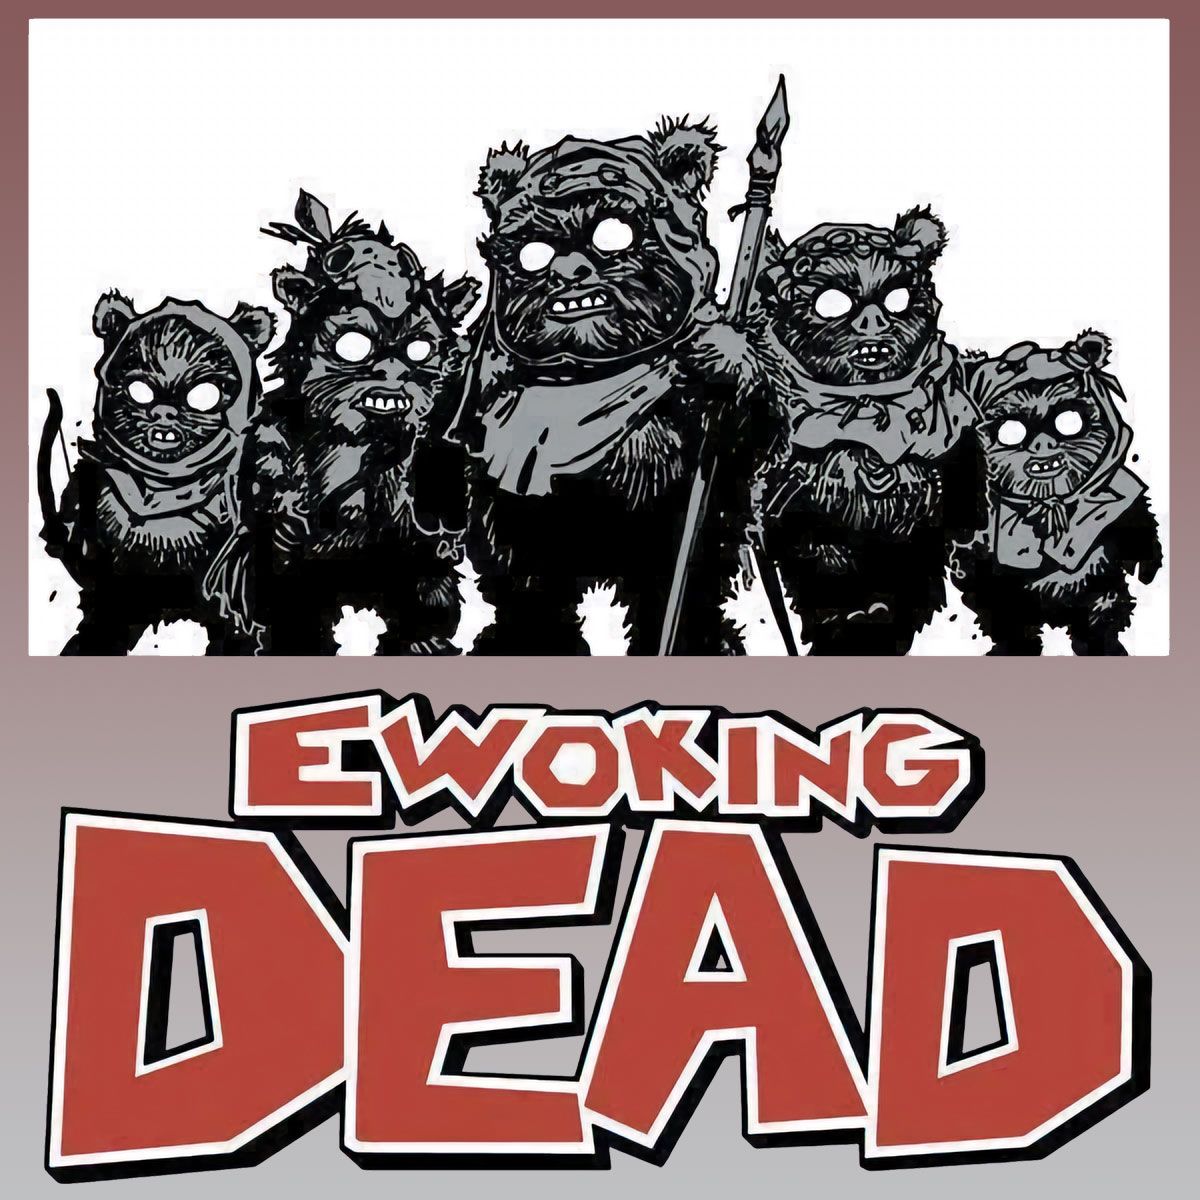 Nome do produto: Ewoking Dead